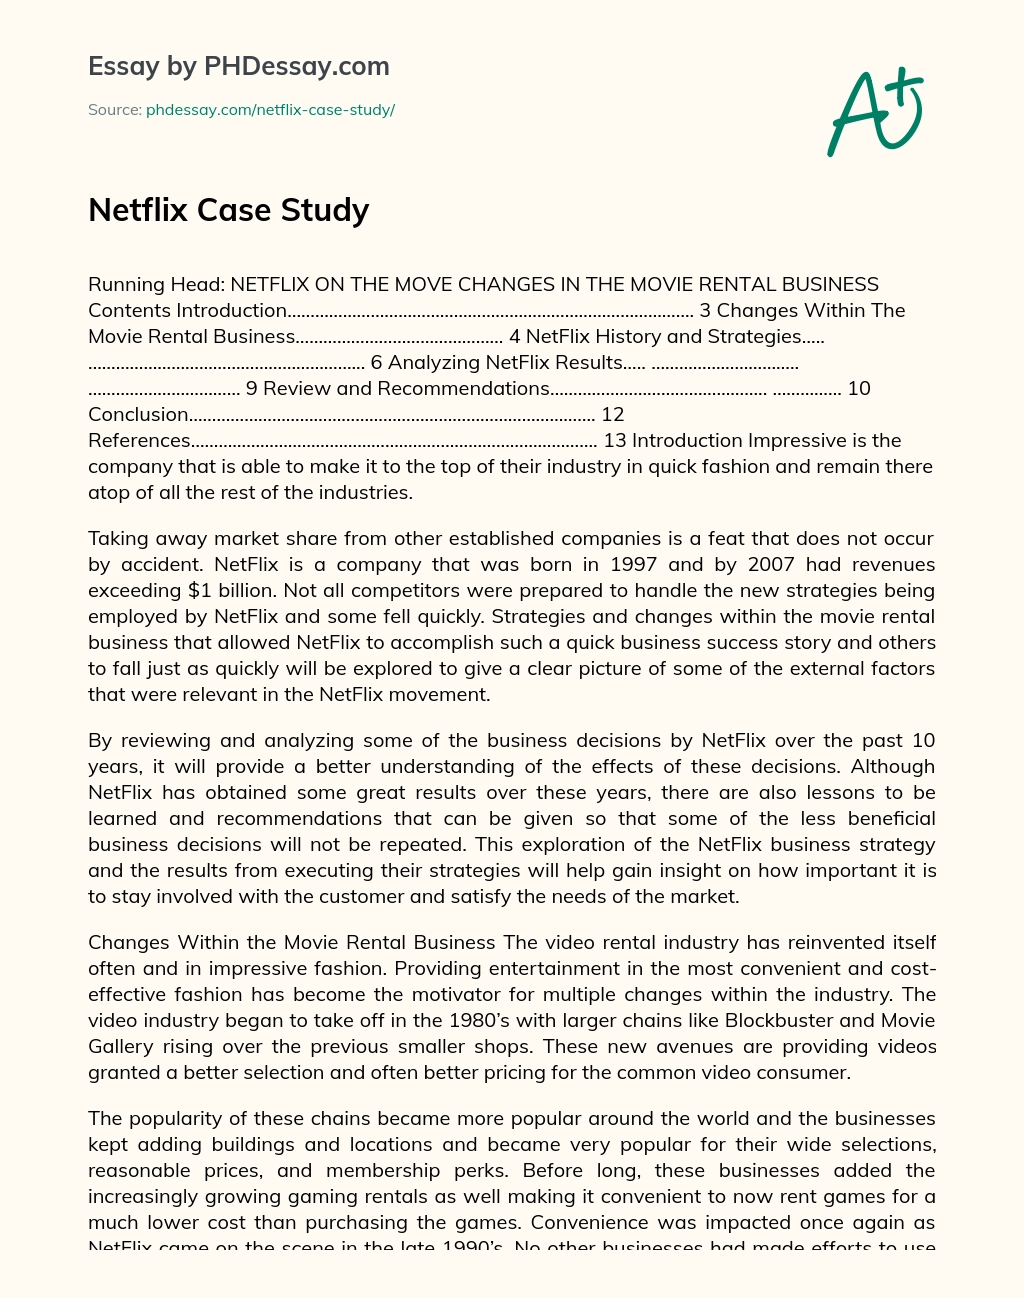 Netflix Case Study essay